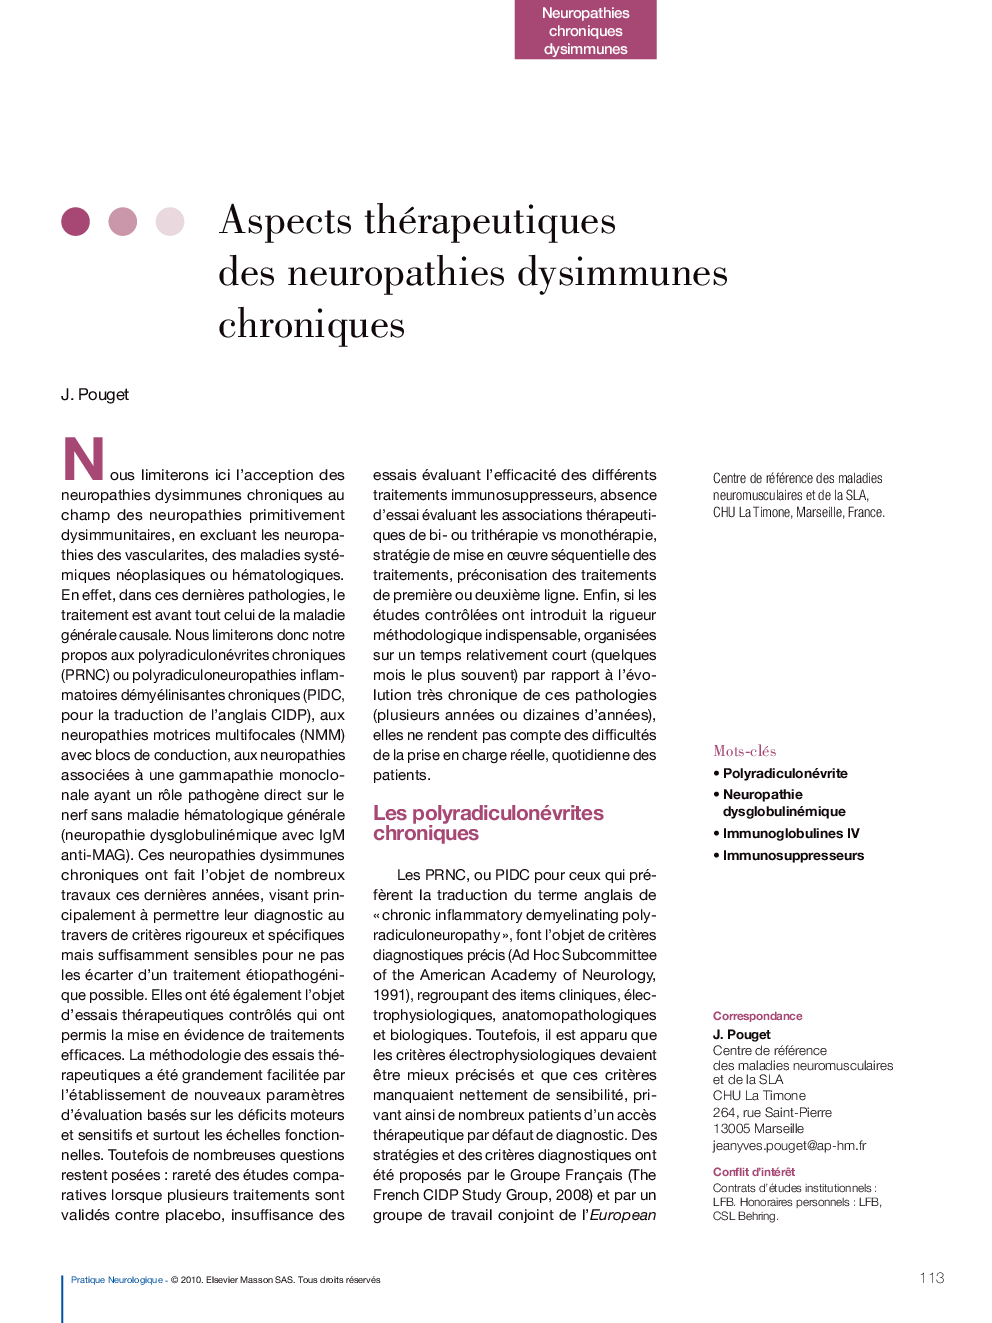 Aspects thérapeutiques des neuropathies dysimmunes chroniques